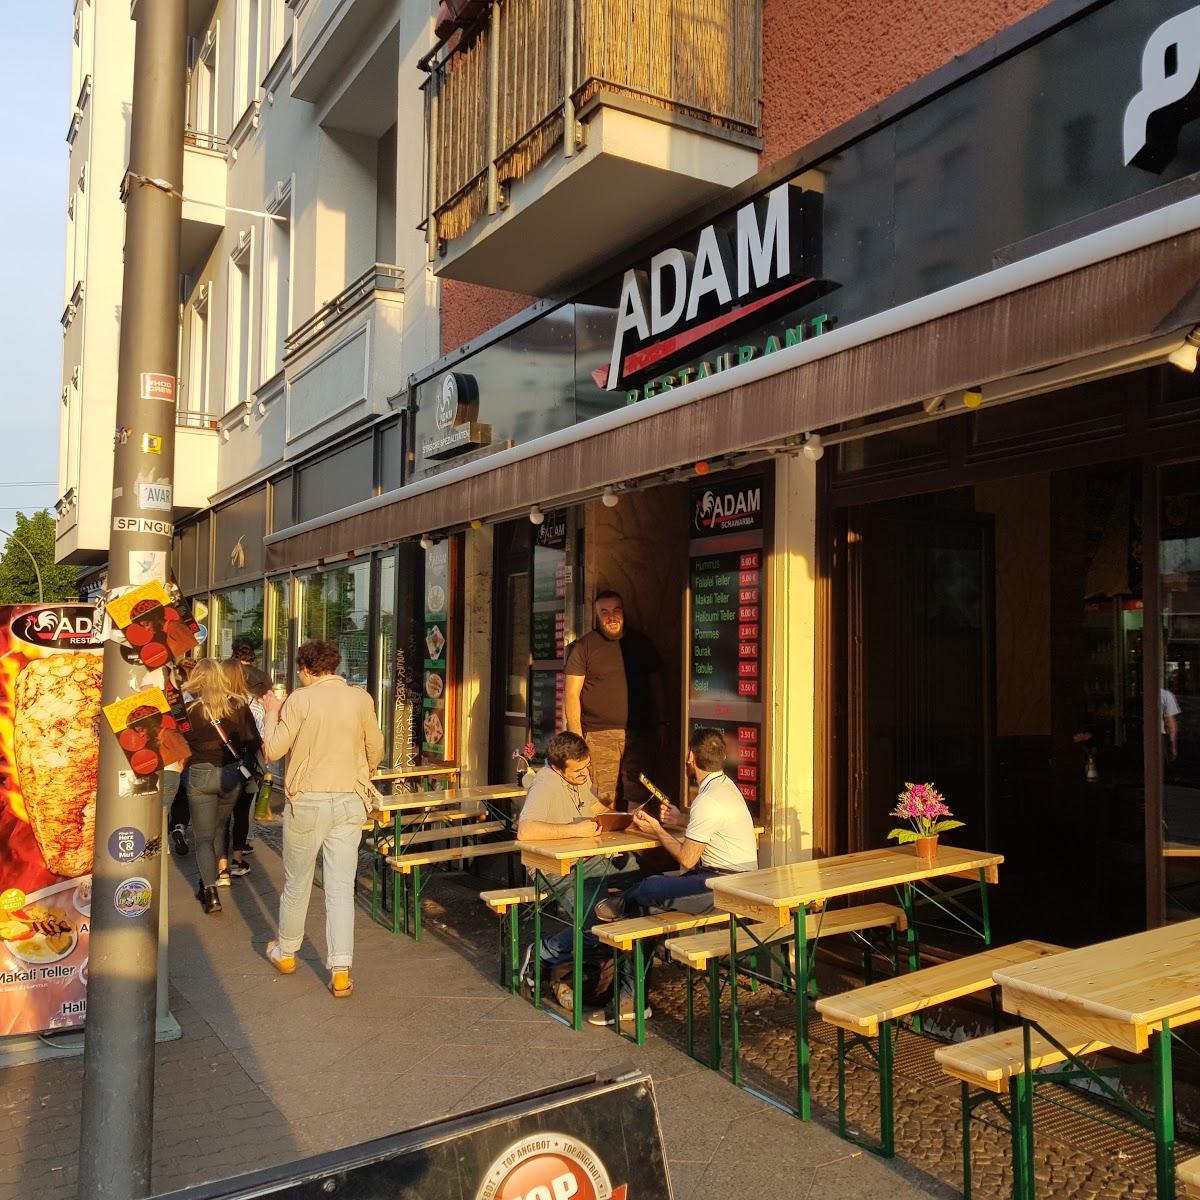 Restaurant "ADAM RESTAURANT" in Berlin